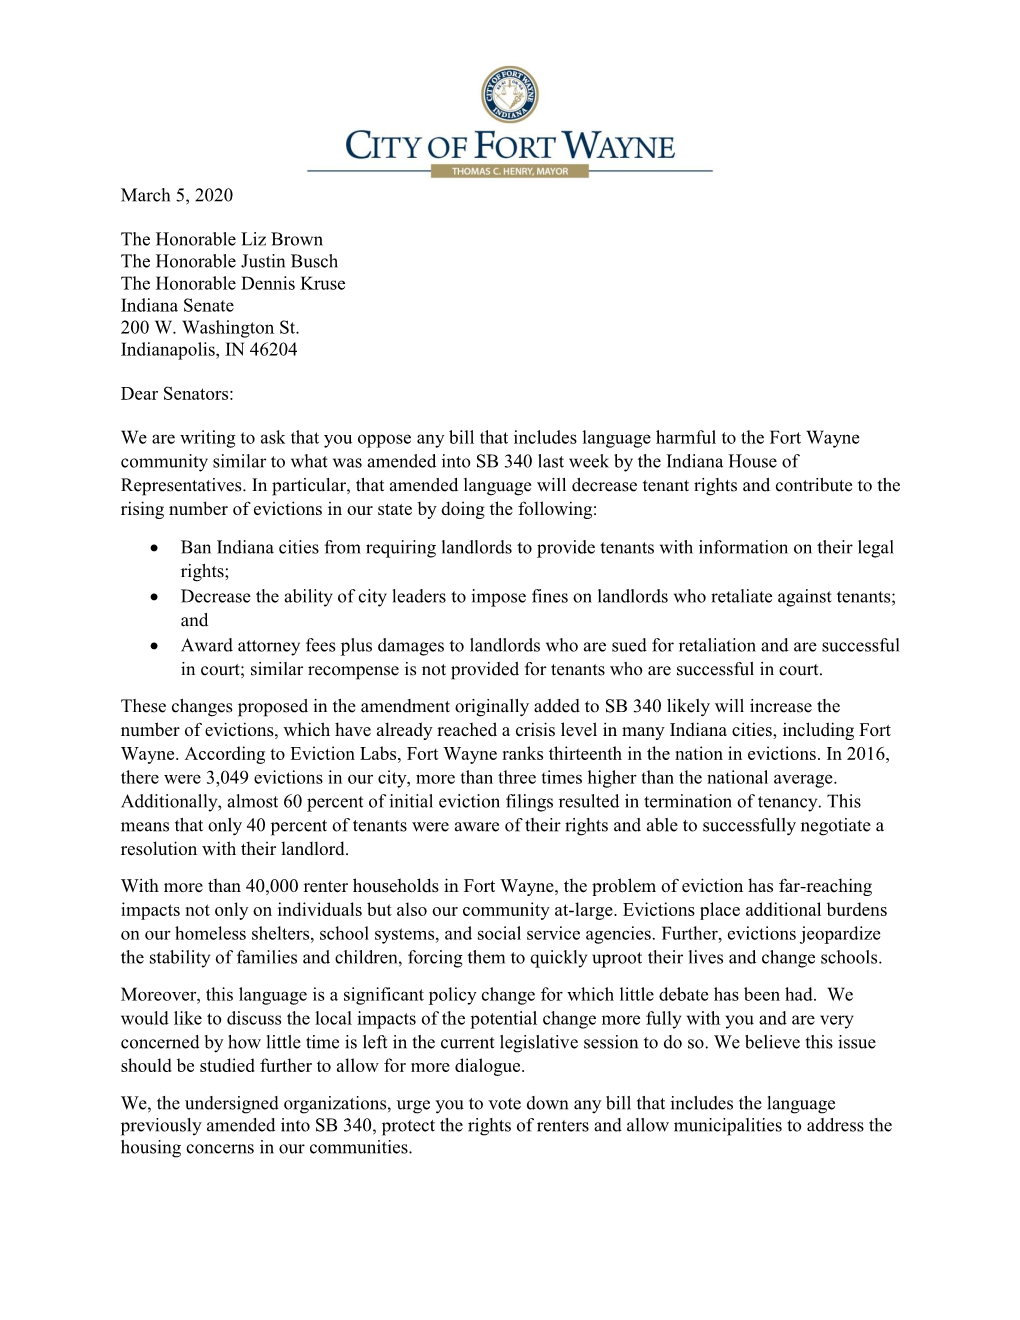 City of Fort Wayne SB340 Opposition Letter